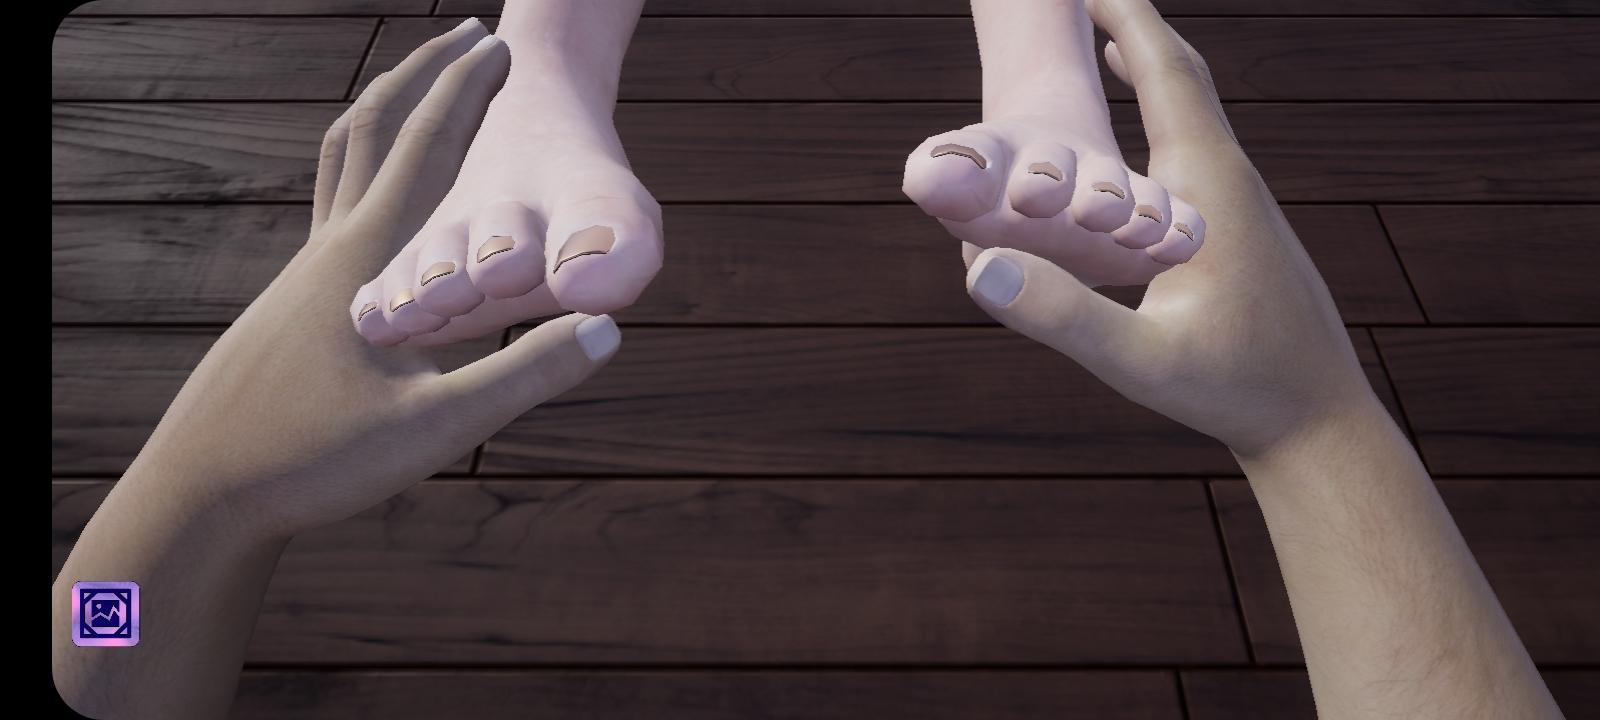 Girlfriend feet игра. Angel foot скрины. Girlfriends feet